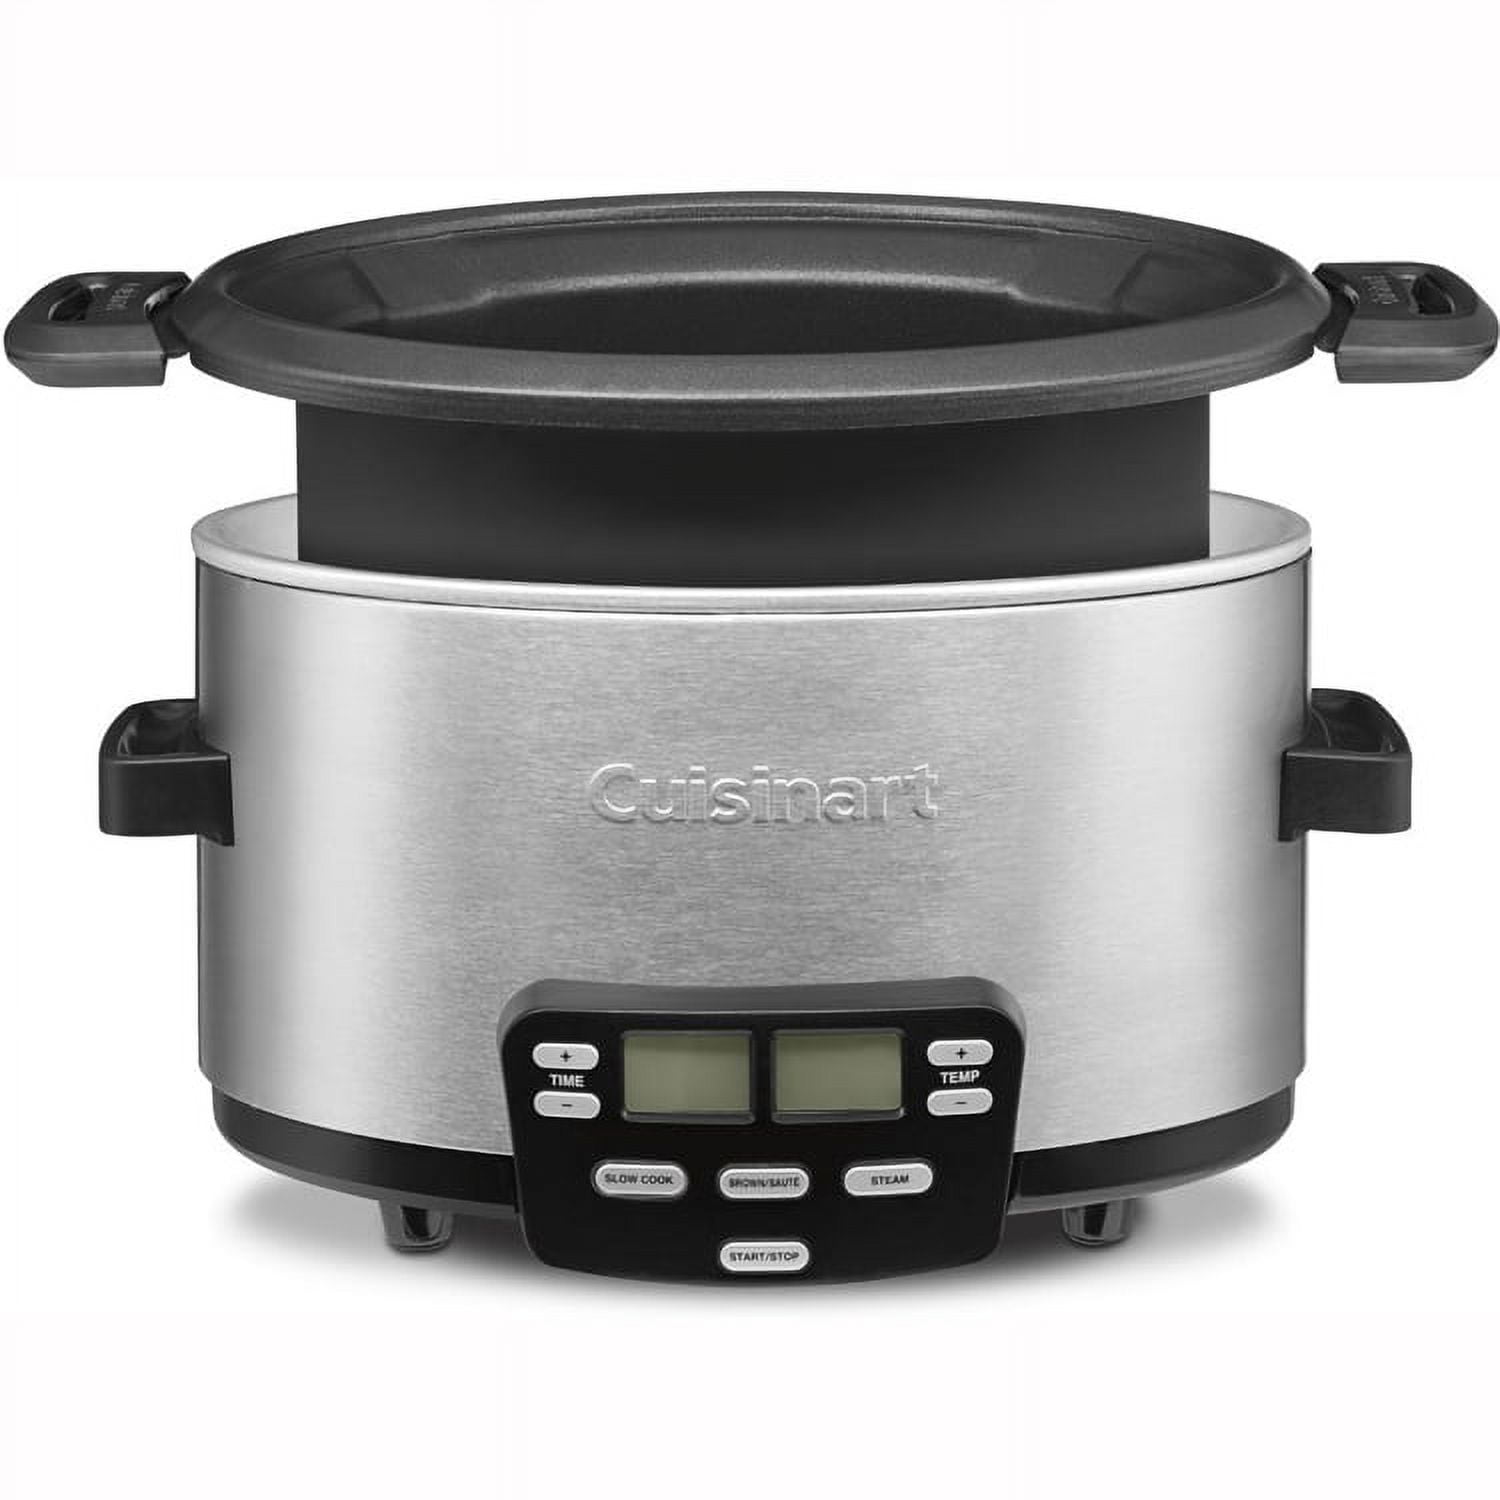 Cuisinart MSC-600 3-In-1 Cook Central 6-Quart Multi-Cooker • Zestfull